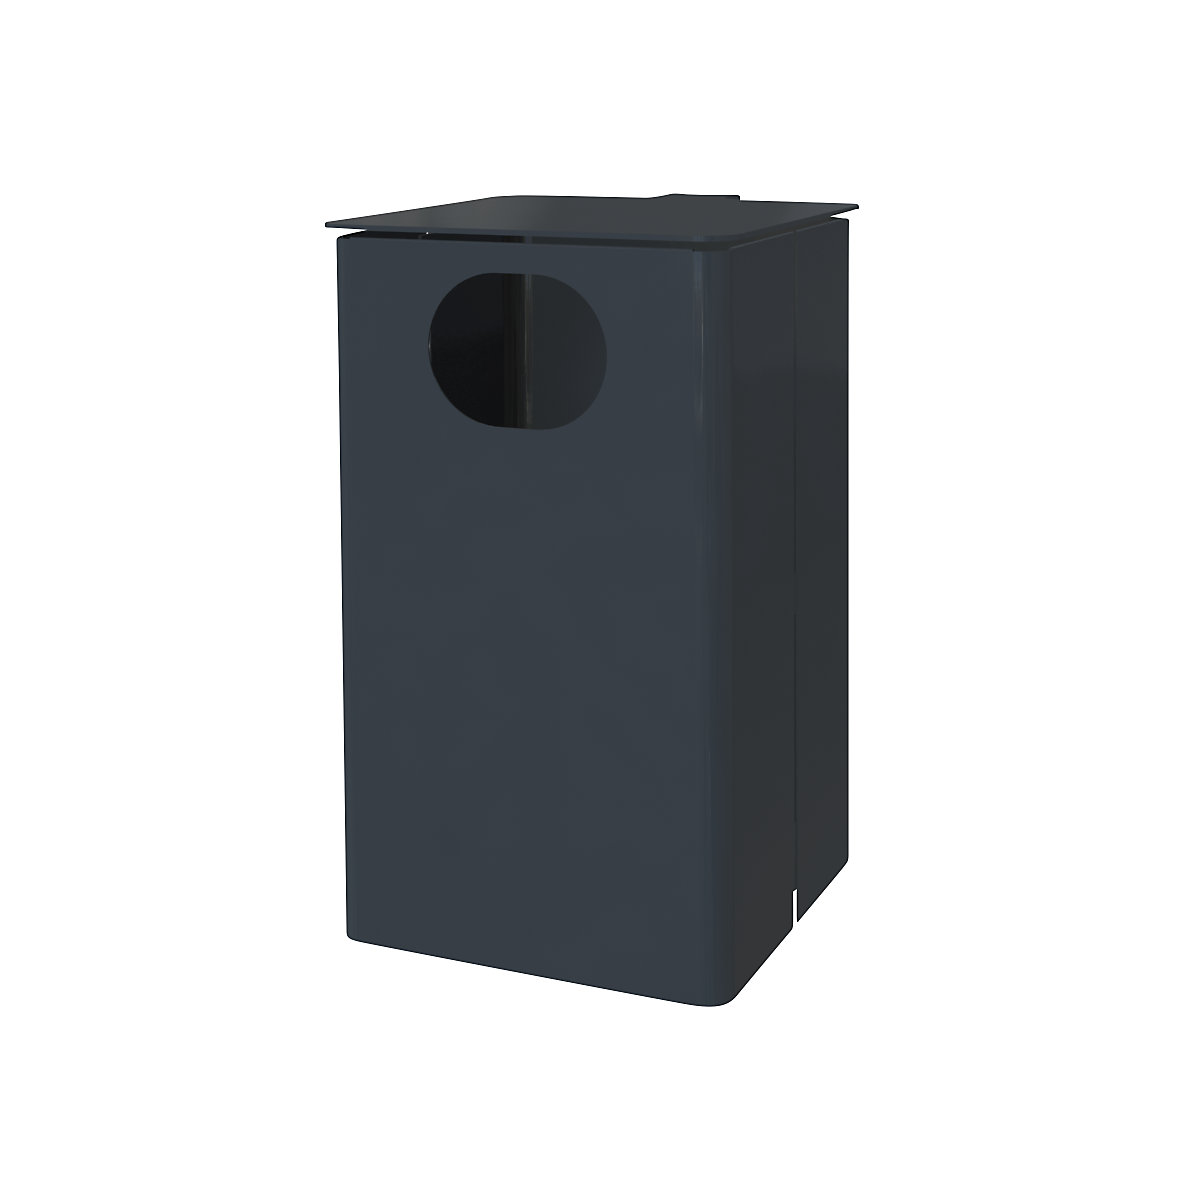 Außen-Abfallbehälter, Volumen 35 l, HxBxT 537 x 325 x 388 mm, anthrazitgrau